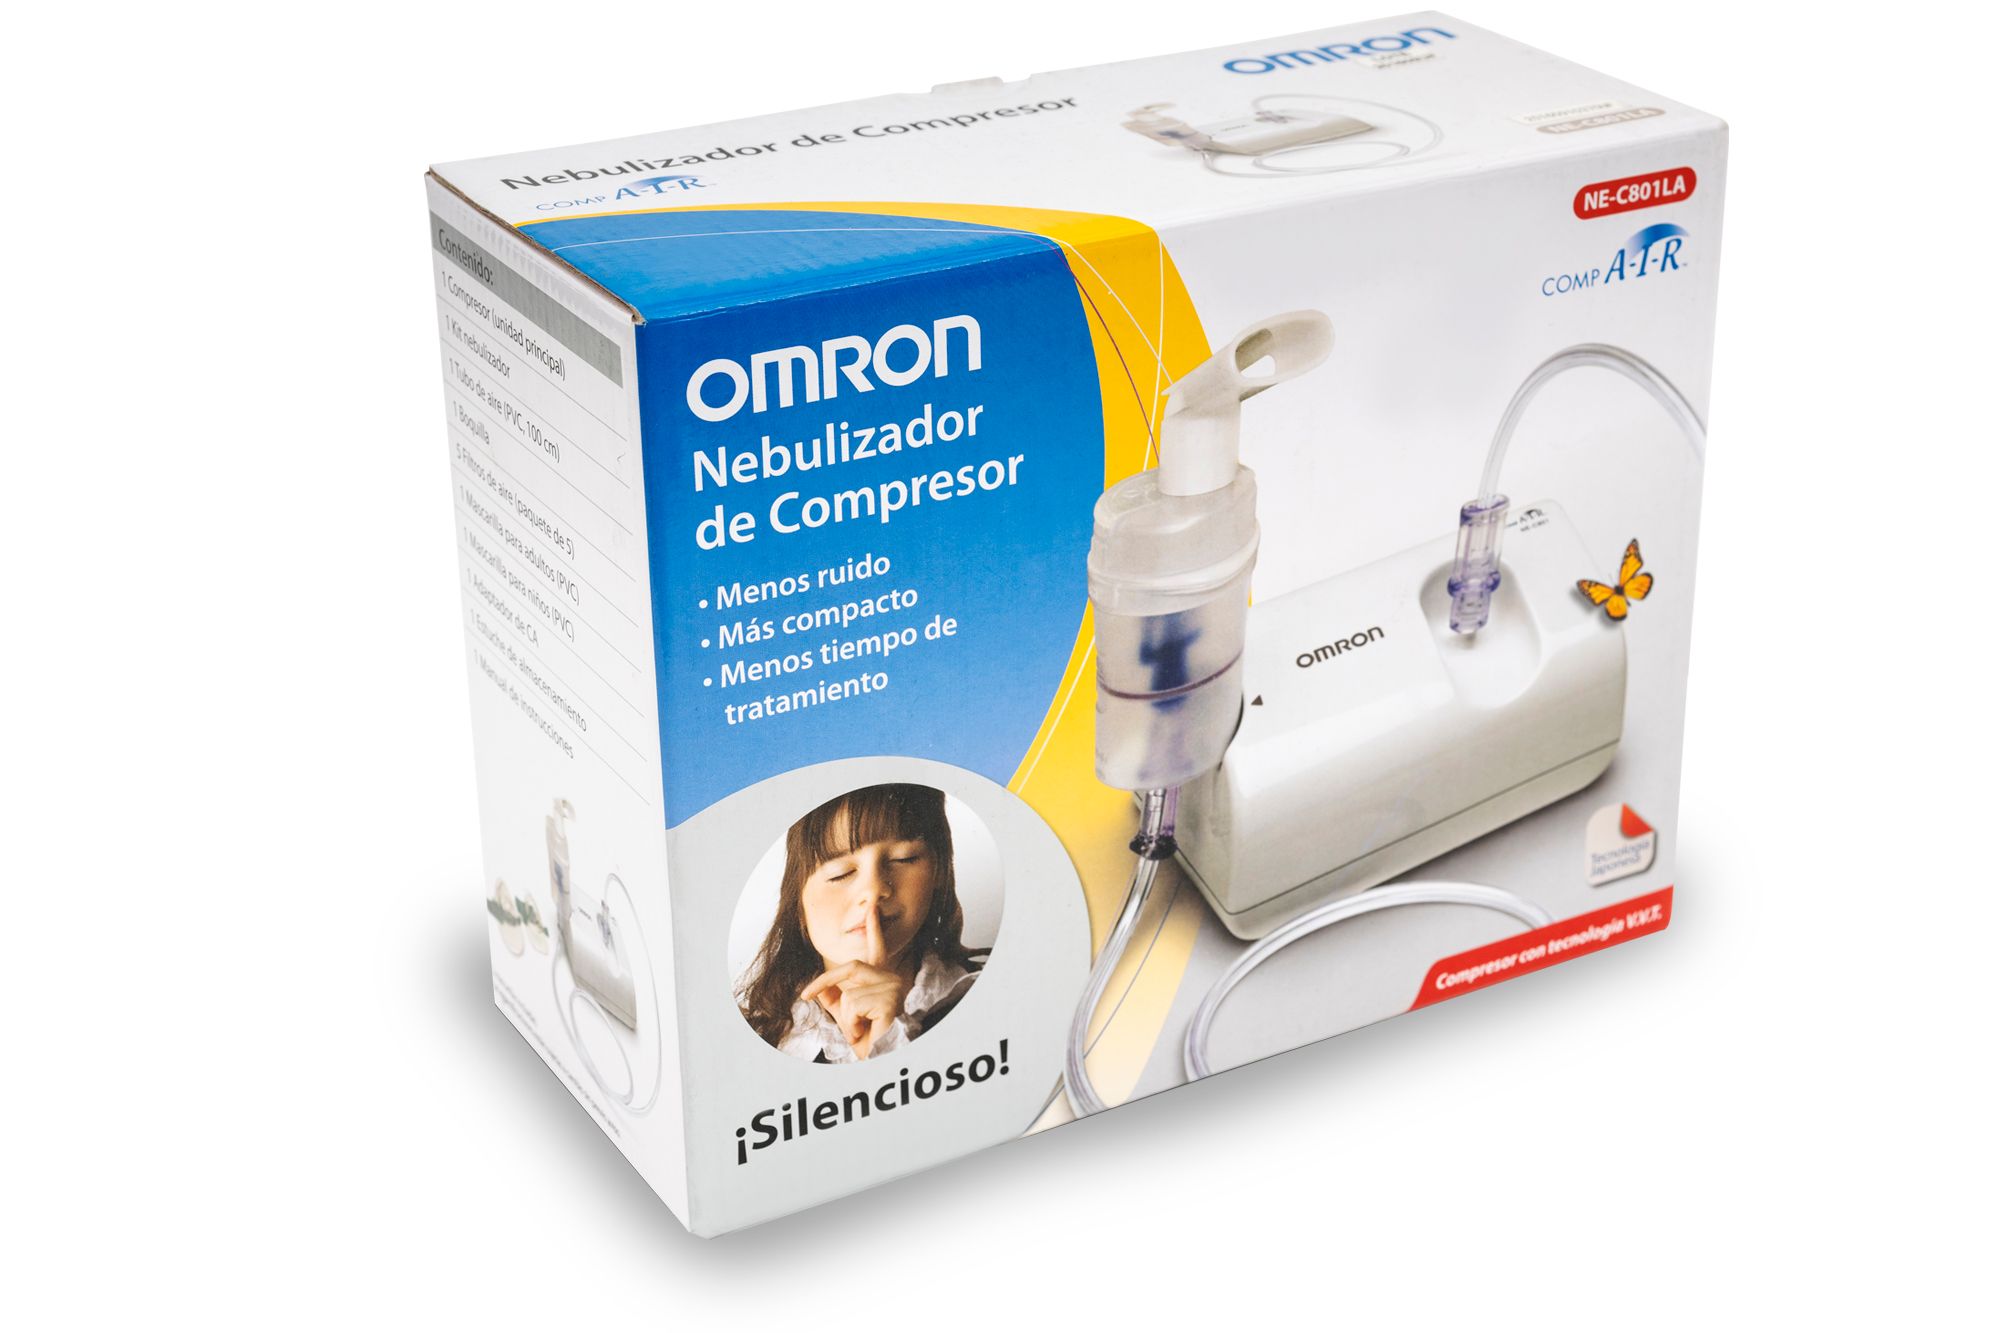 Nebulizador de Compresor Omron - Muebles Medicos MedicalNaf